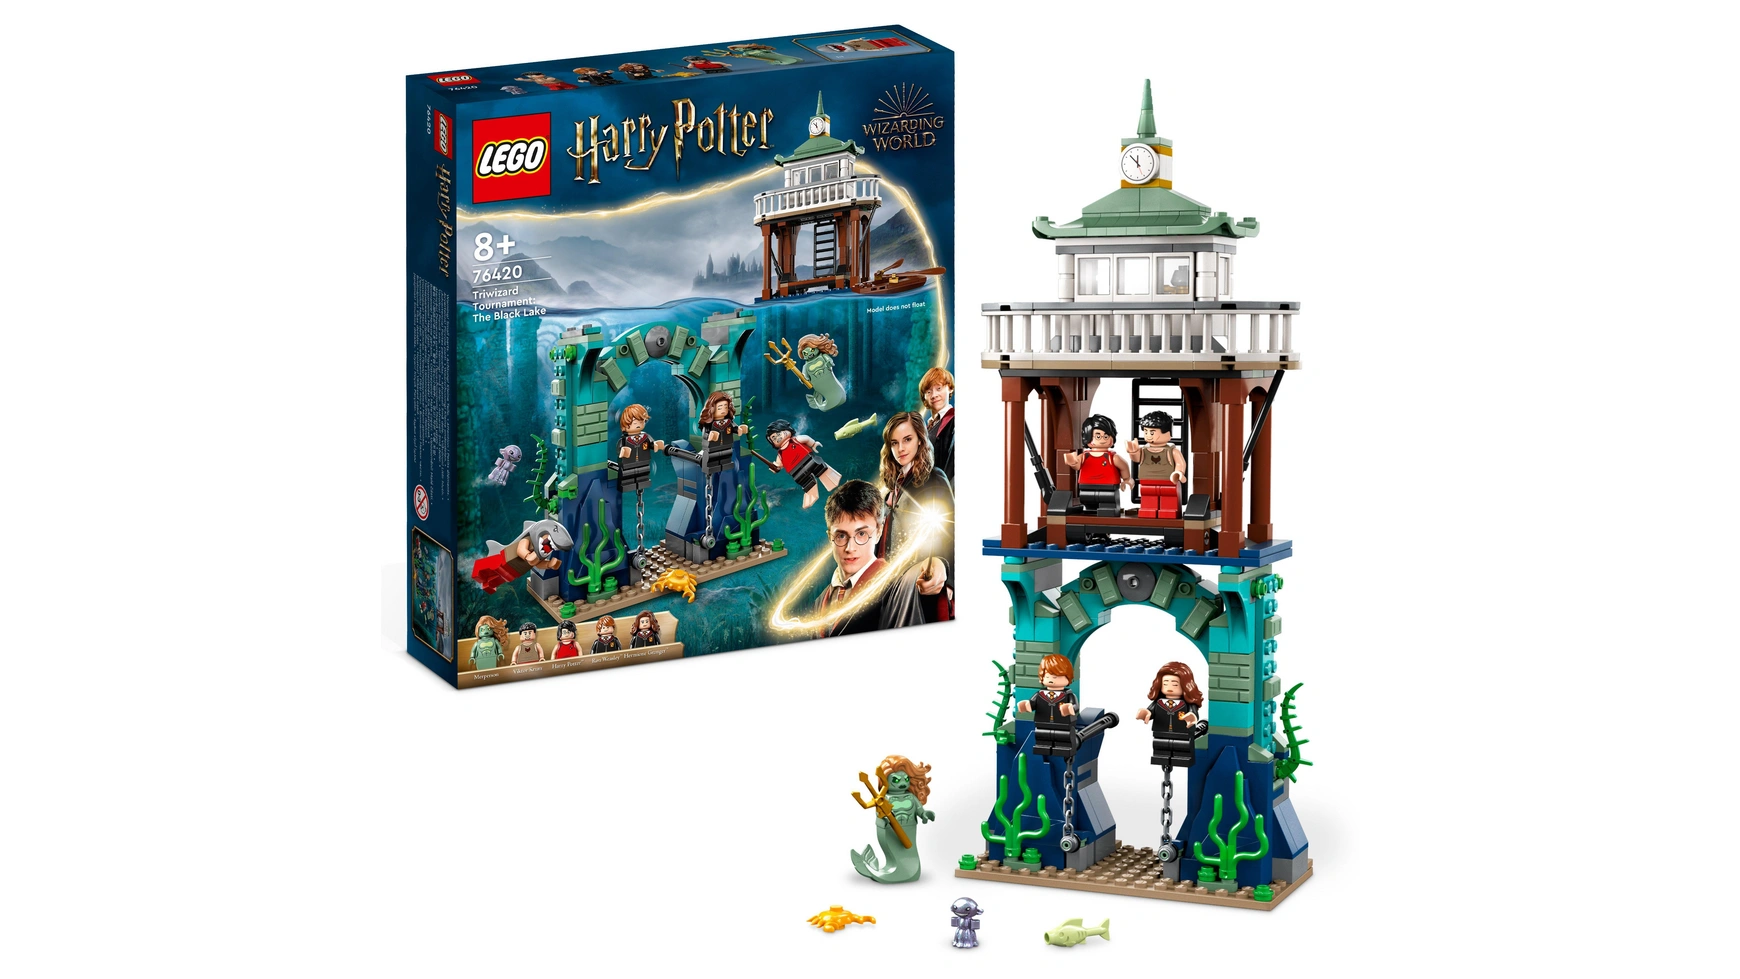 Lego Harry Potter Турнир трех волшебников: Черное озеро конструктор lego harry potter 4758 хогвартс экспресс 386 дет